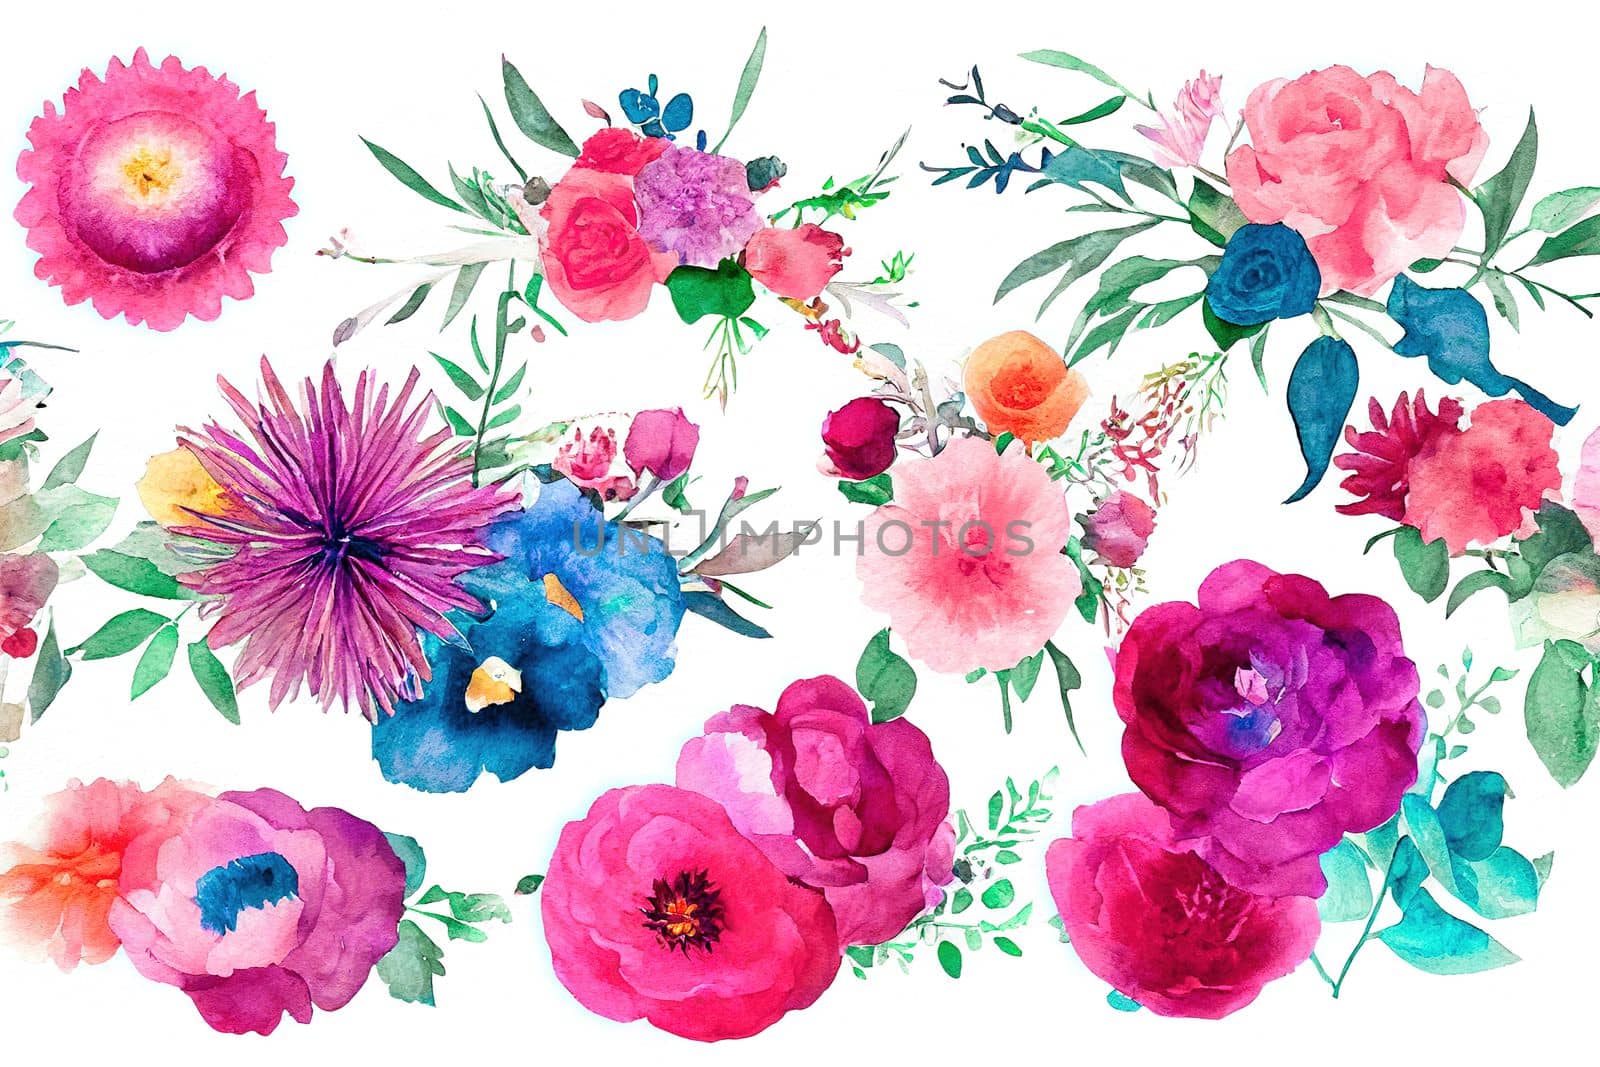 Flower bouquet set watercolor pieces of artwork design by biancoblue